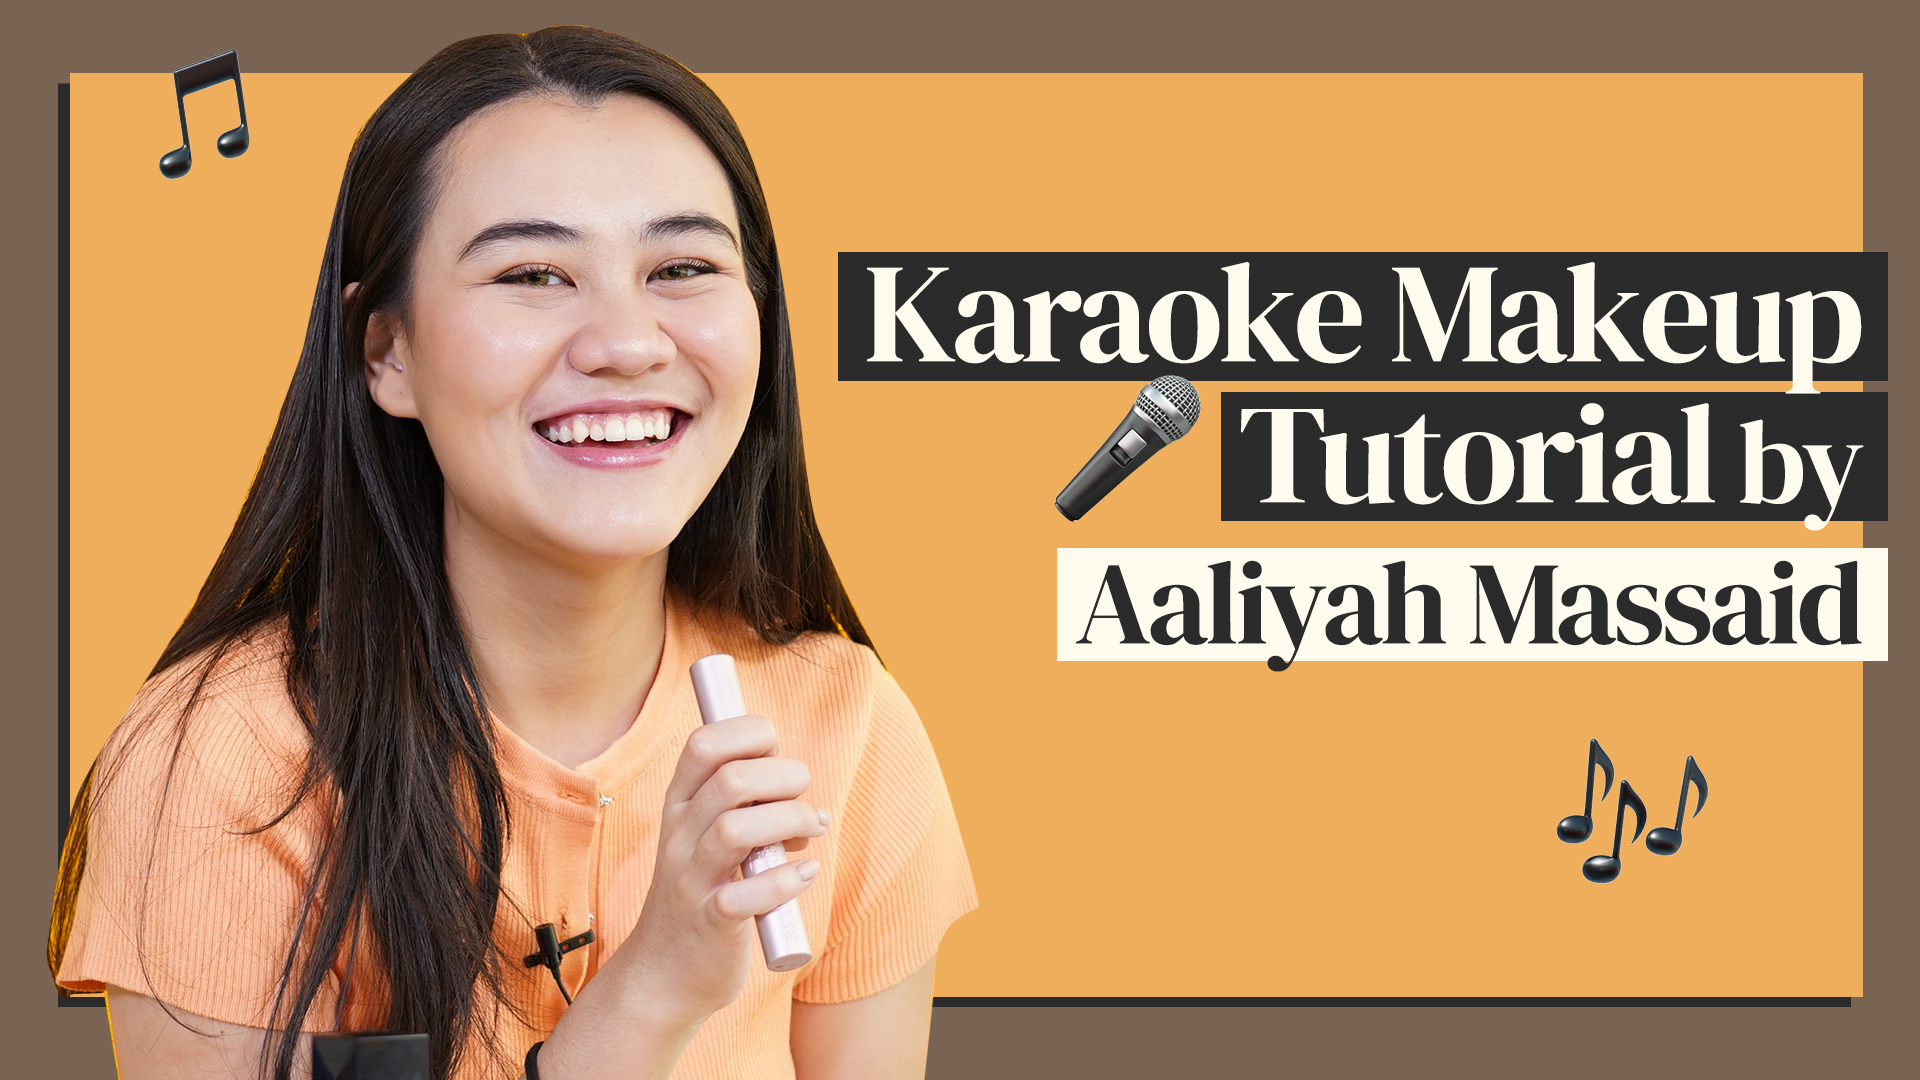 Aaliyah Massaid Ditantang Multitasking | Makeup Karaoke